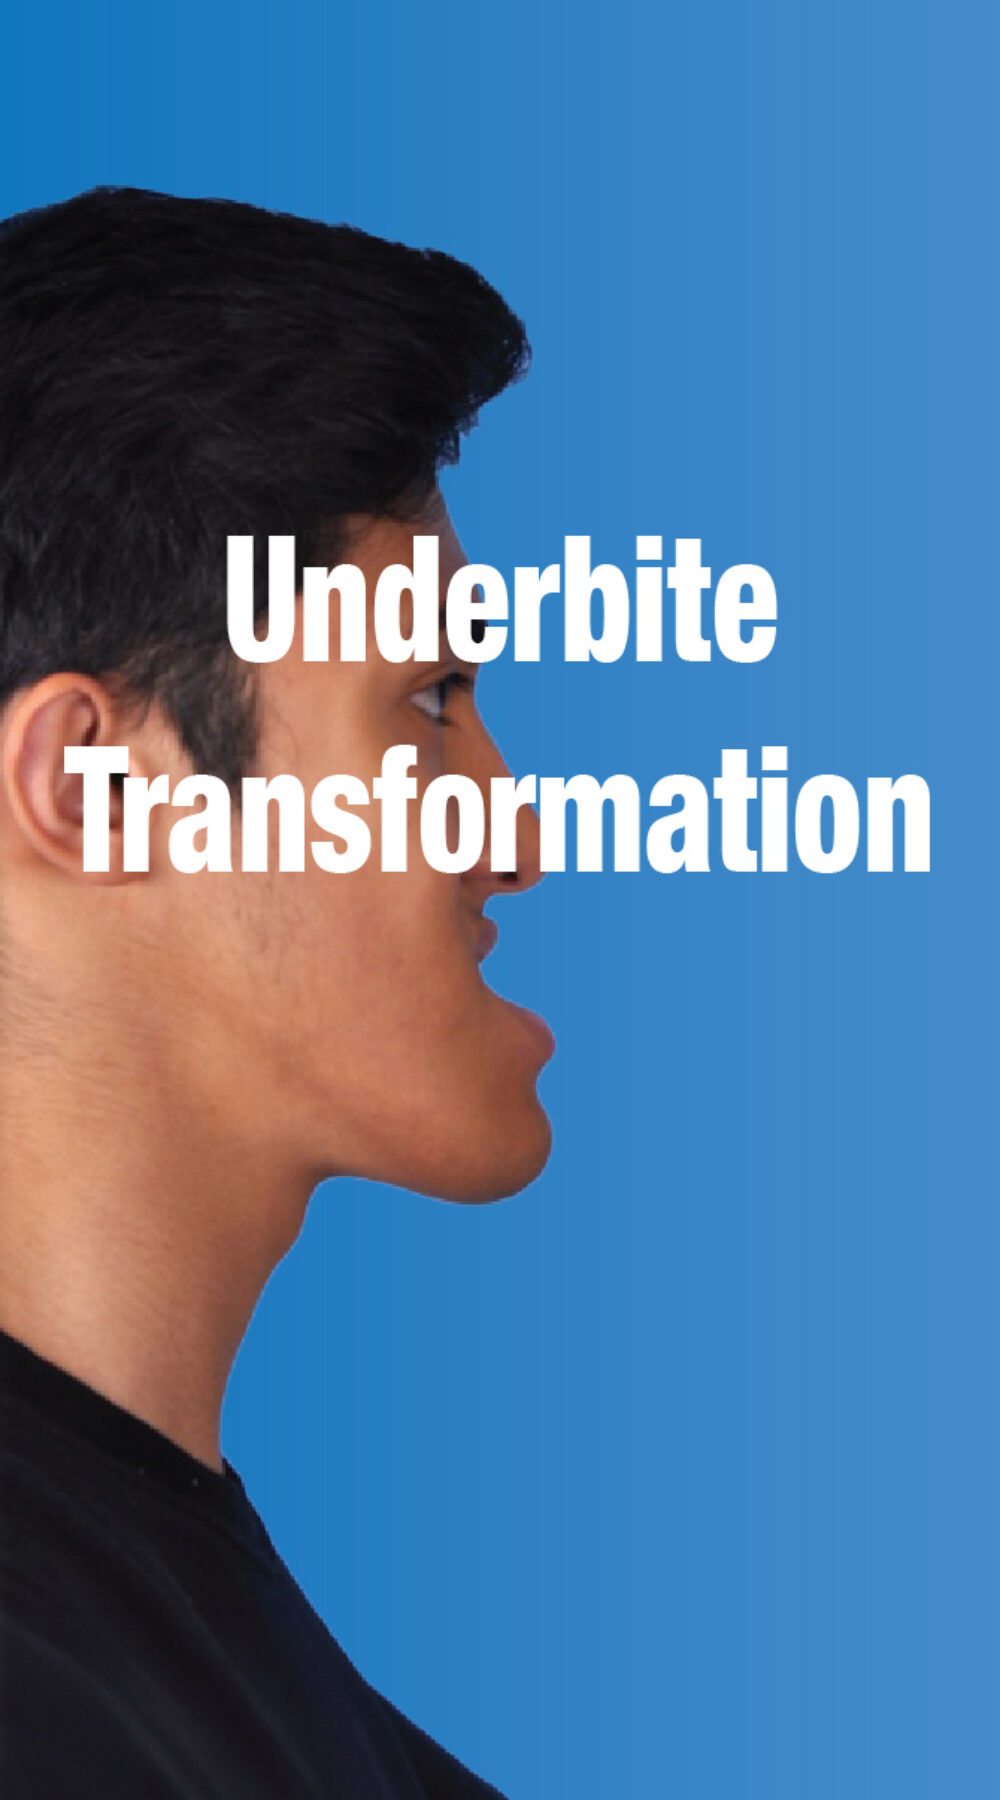 Underbite Transformation